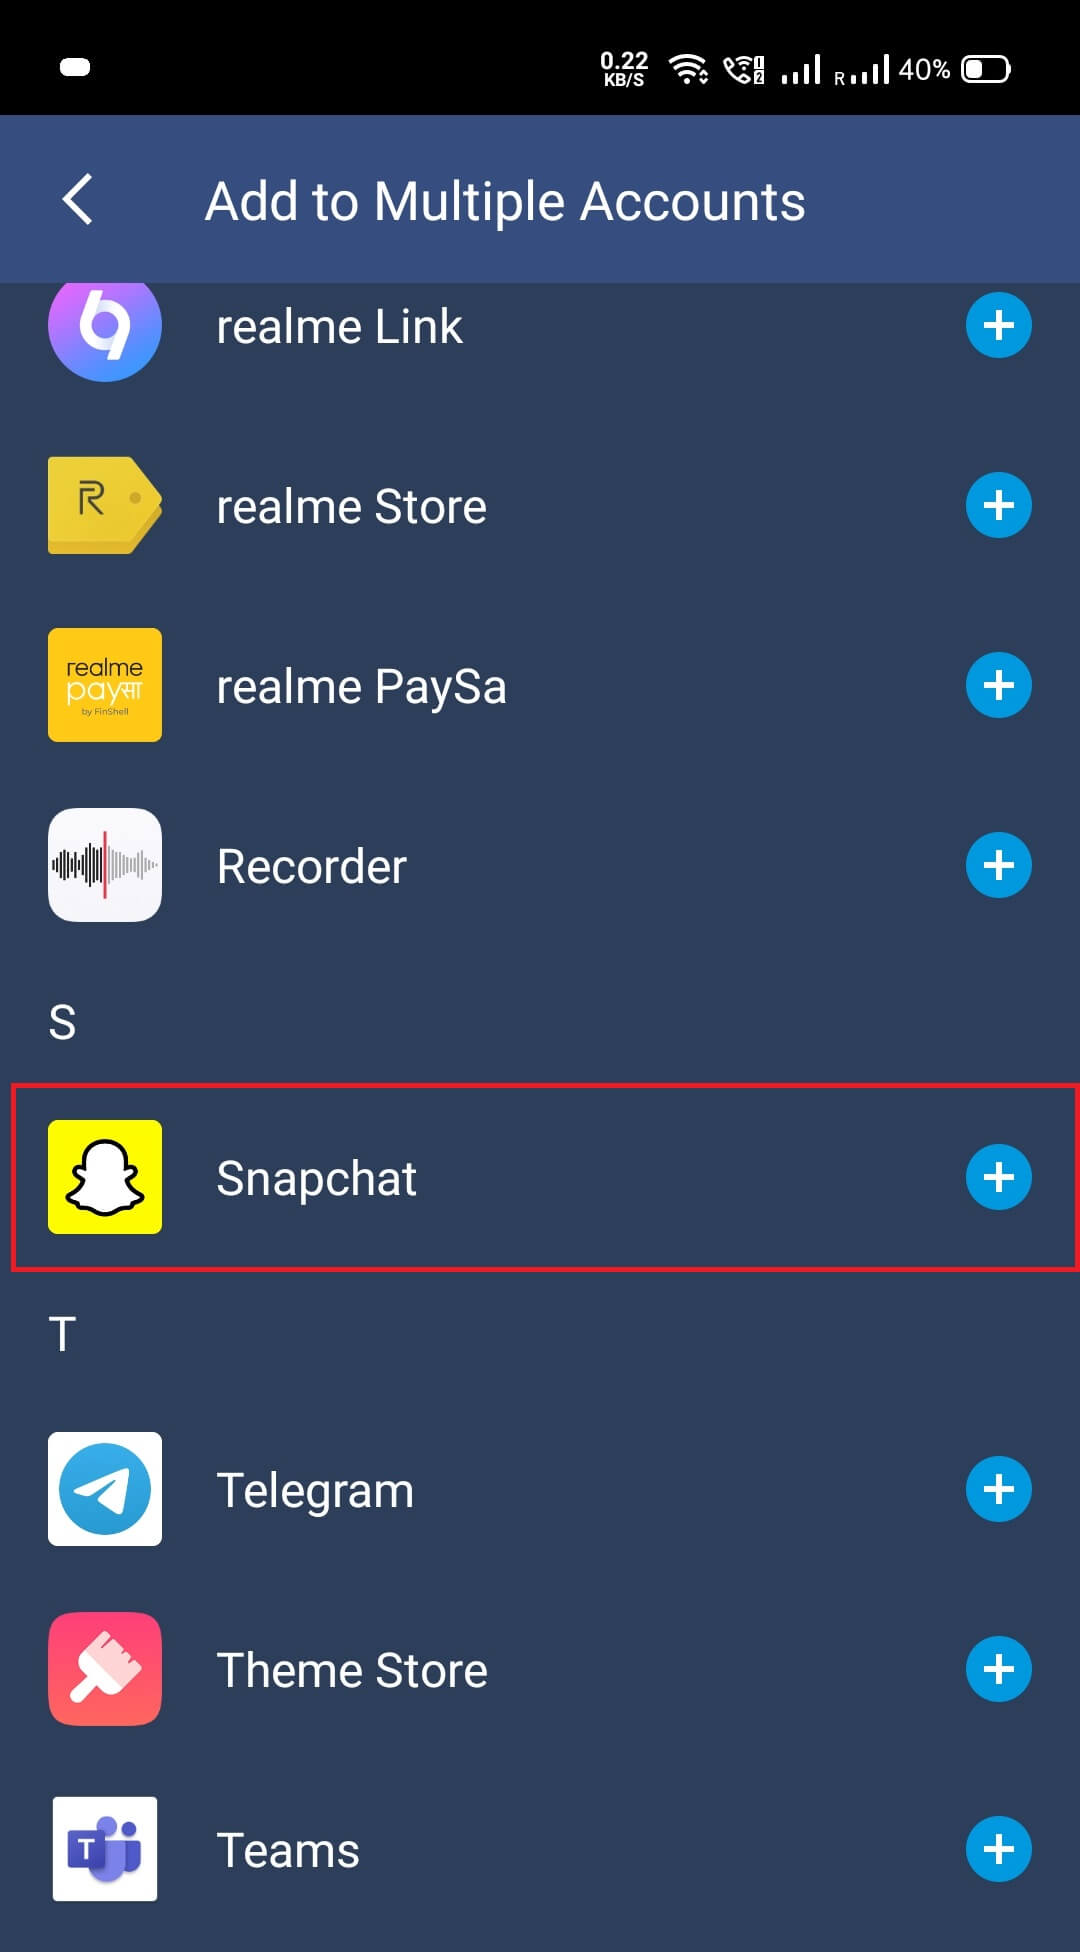 Desplácese y busque Snapchat en las opciones dadas.  Tócalo.  |  Ejecute dos cuentas de Snapchat en un Android